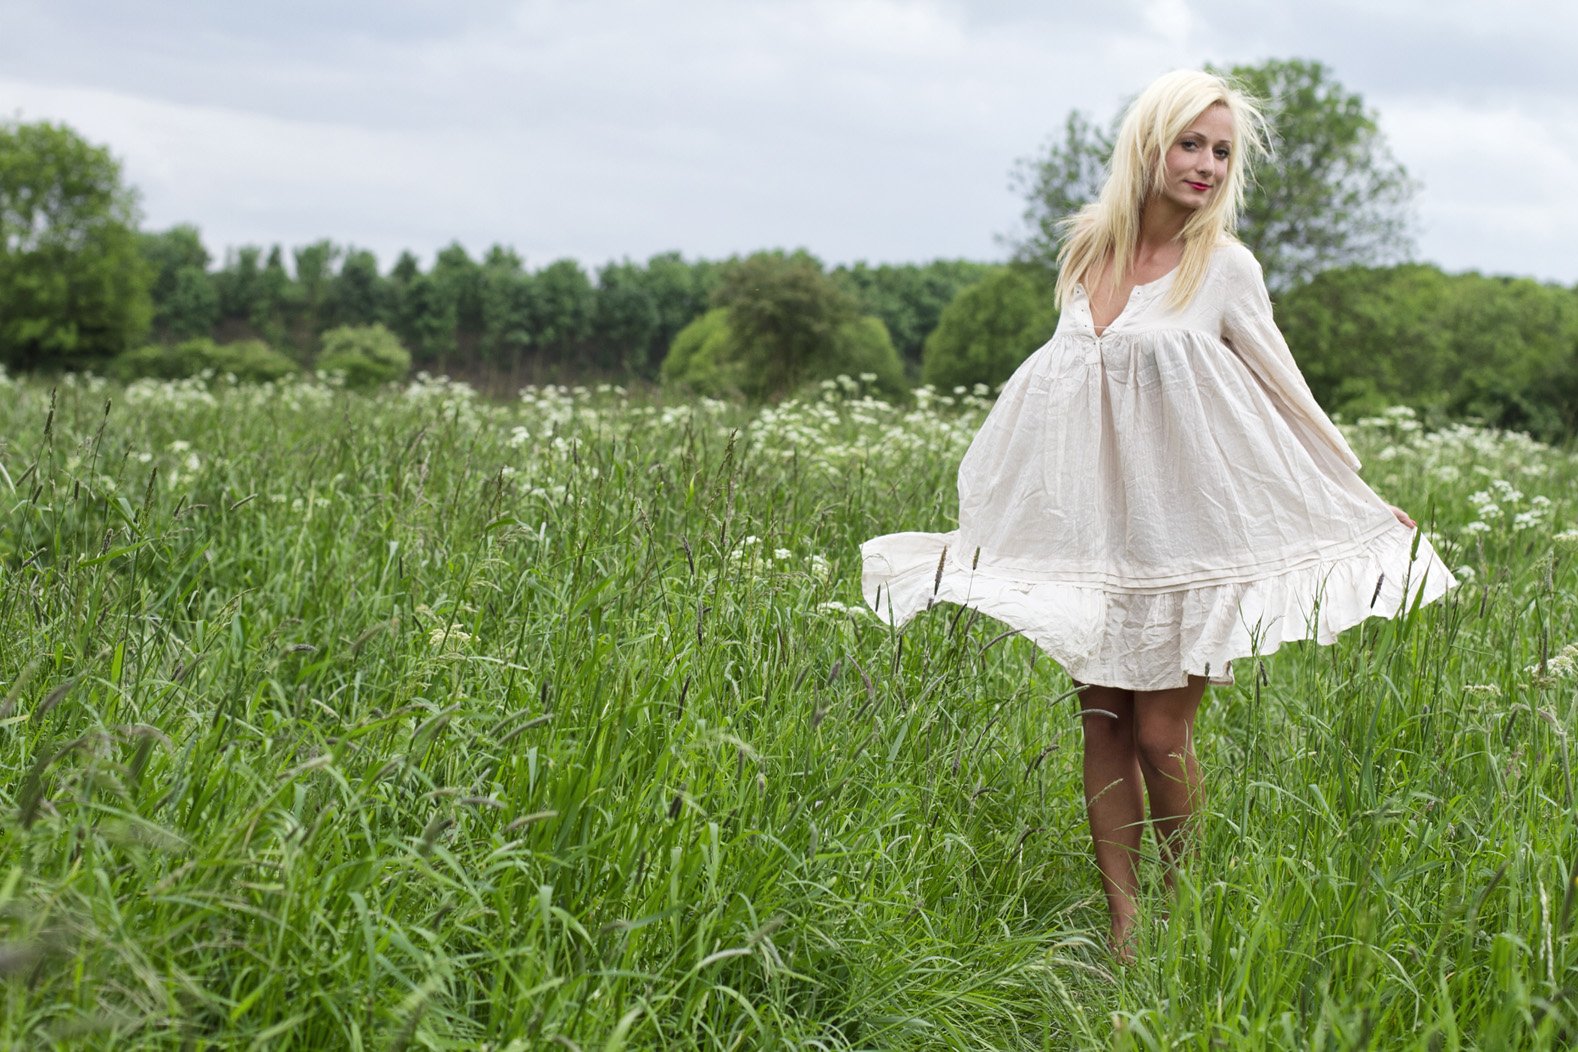 Werbefotografie weibliche Person mit blonden Haaren in einem weissen Kleid. Sie steht auf einer Wiese.